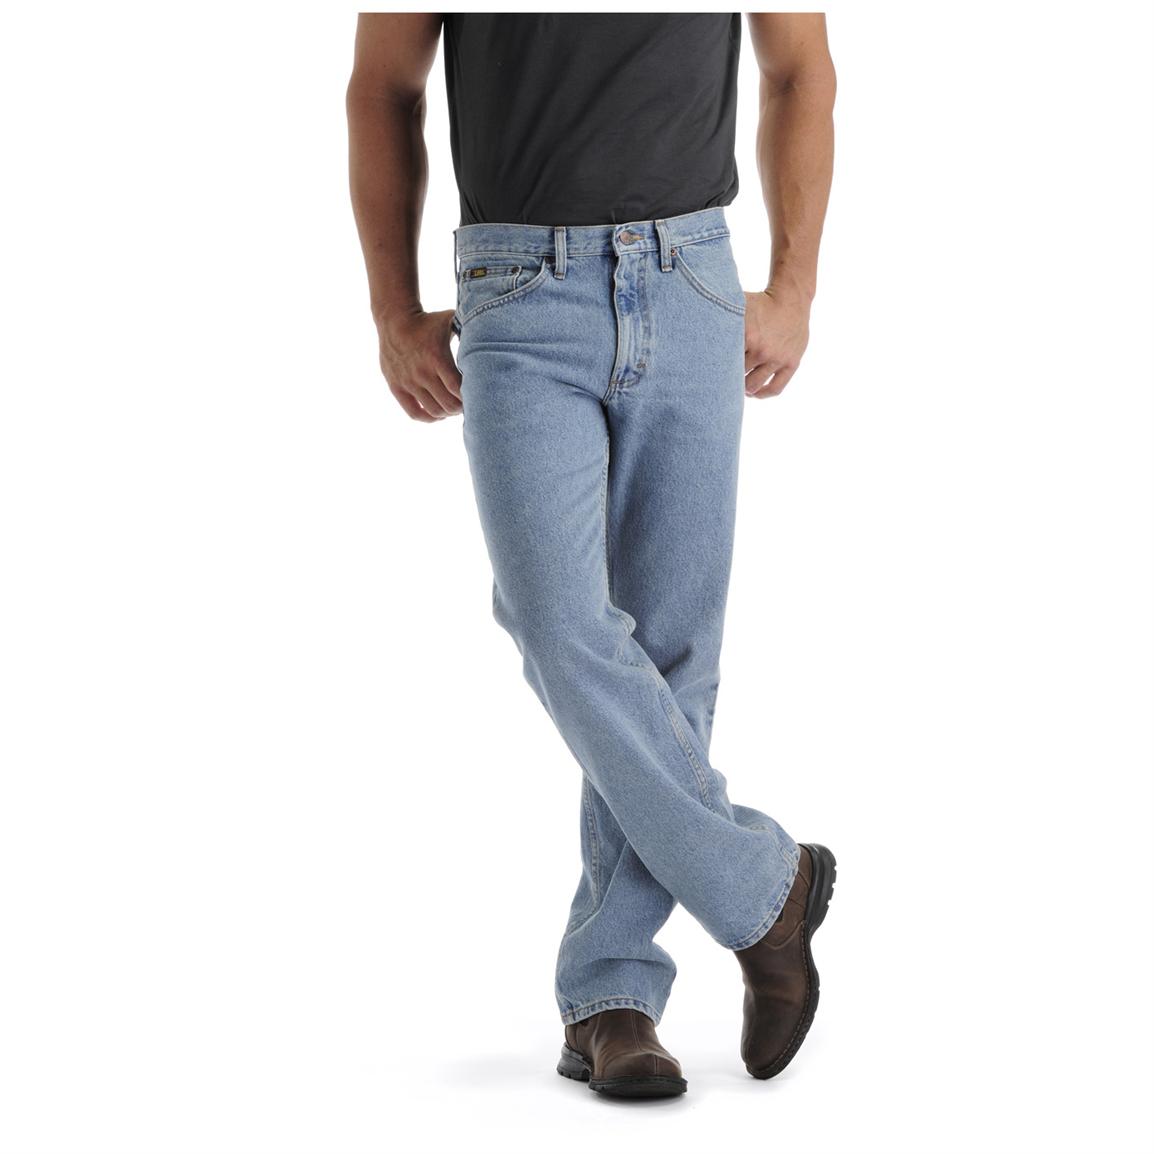 regular vs straight jeans